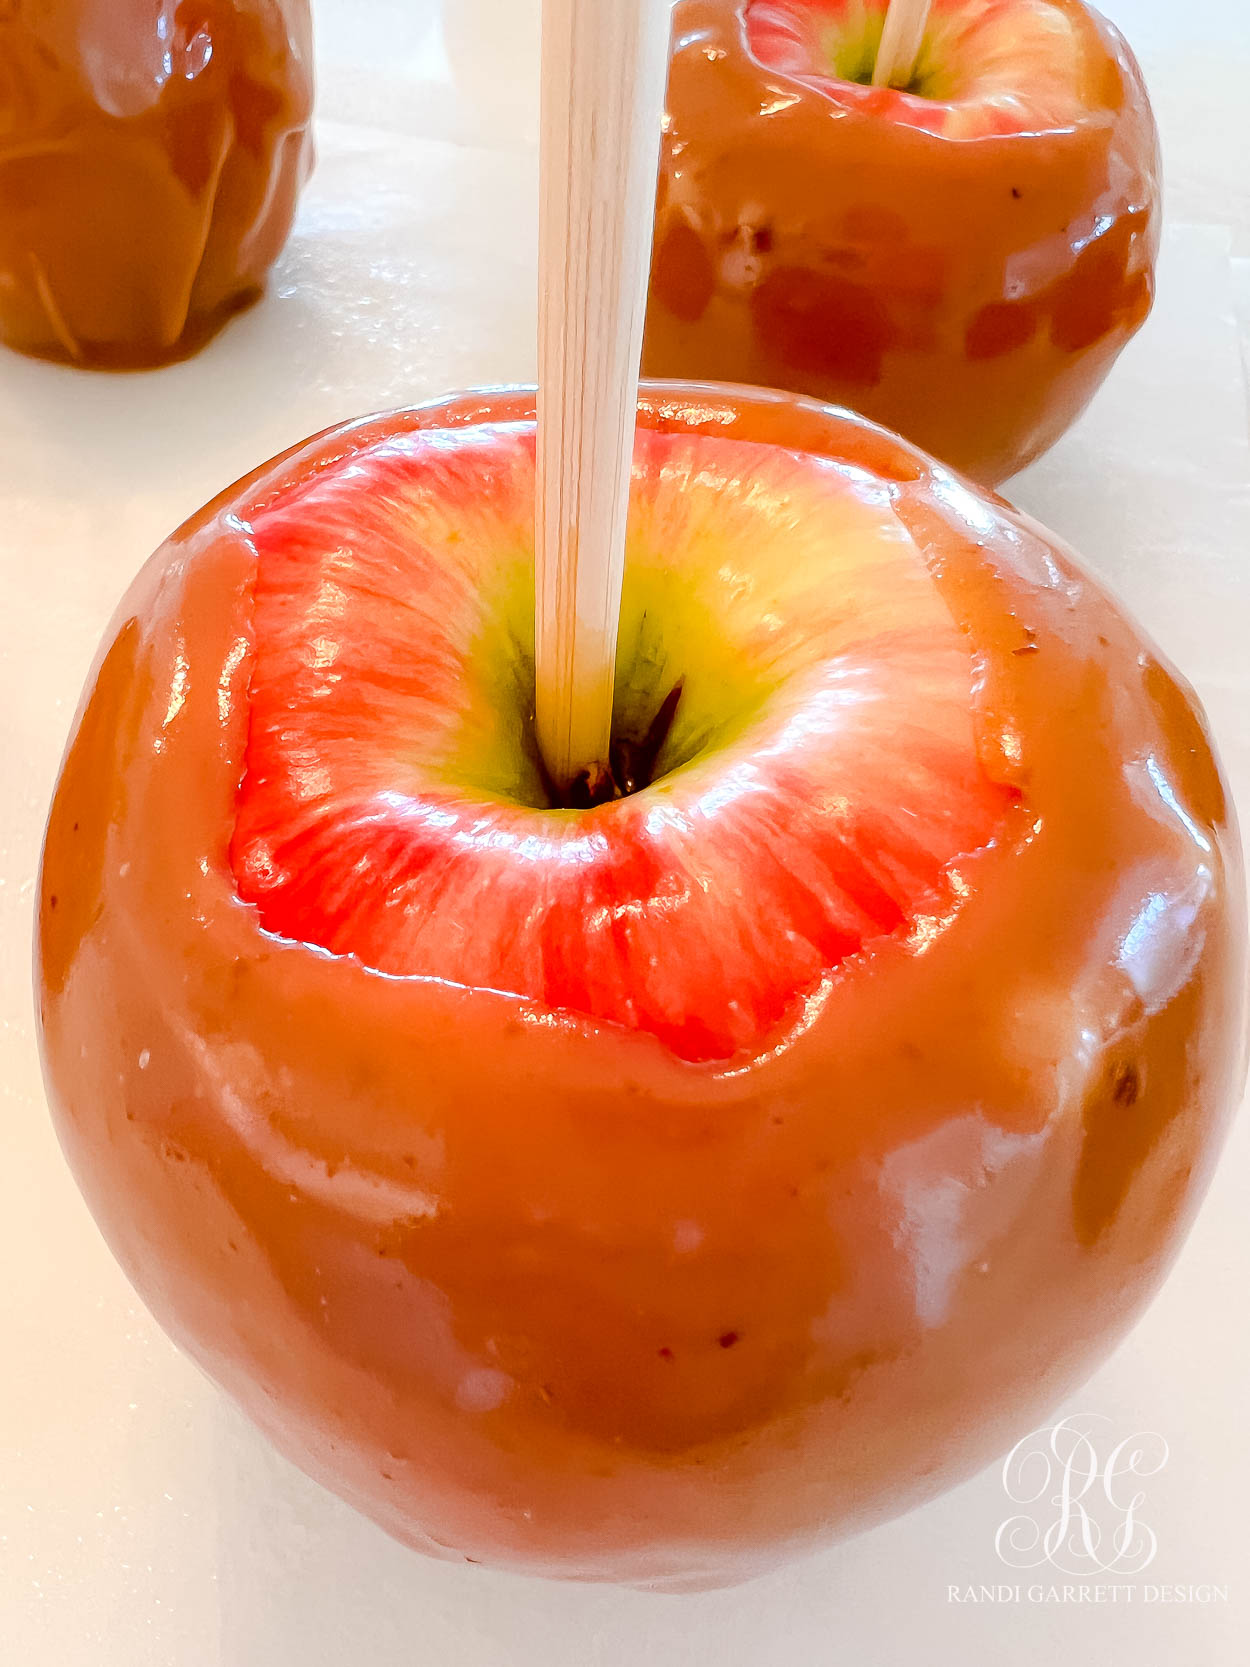 Apple Pie Caramel Apple Recipe